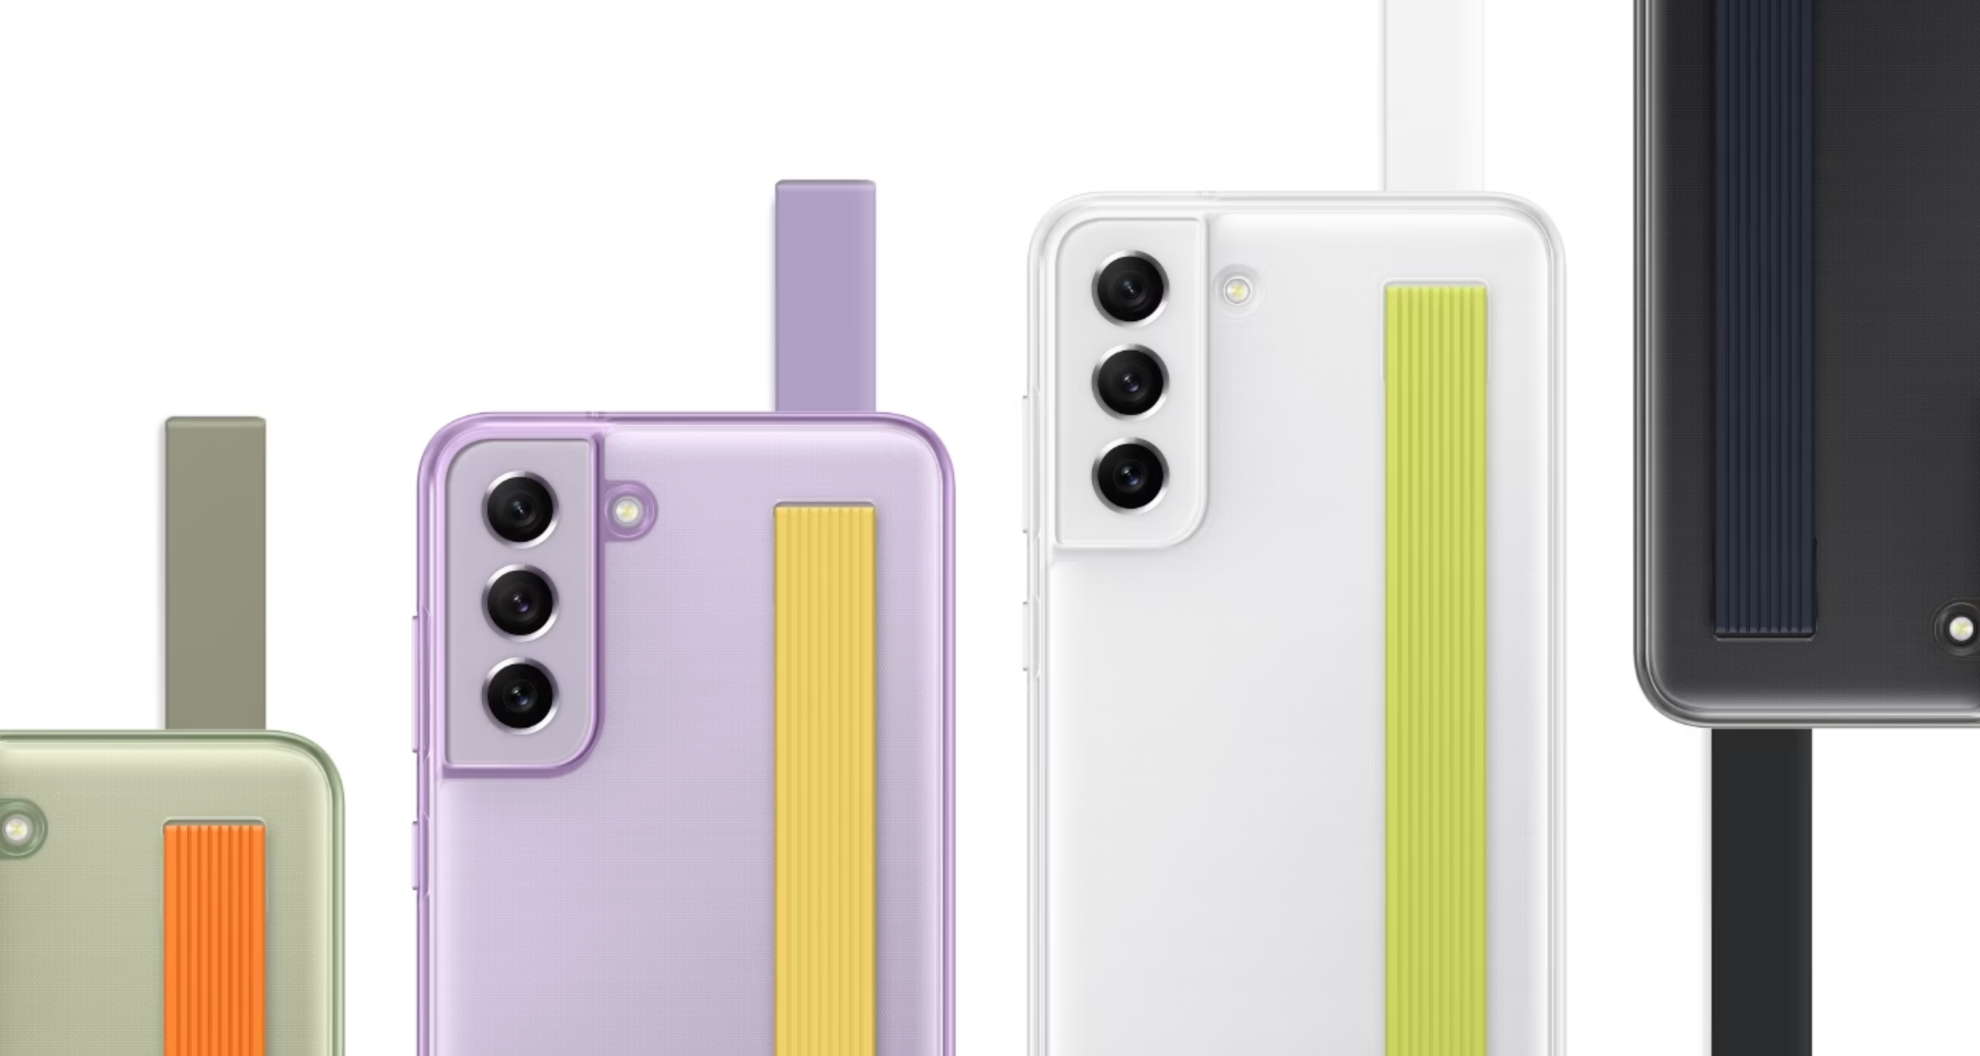 Bốn điện thoại Galaxy S21 FE 5G, tất cả đều được nhìn từ phía sau với Ốp lưng dạng dây đeo mỏng được lắp vào để thể hiện sự kết hợp khác nhau giữa màu sắc của điện thoại và màu sắc của dây đeo.